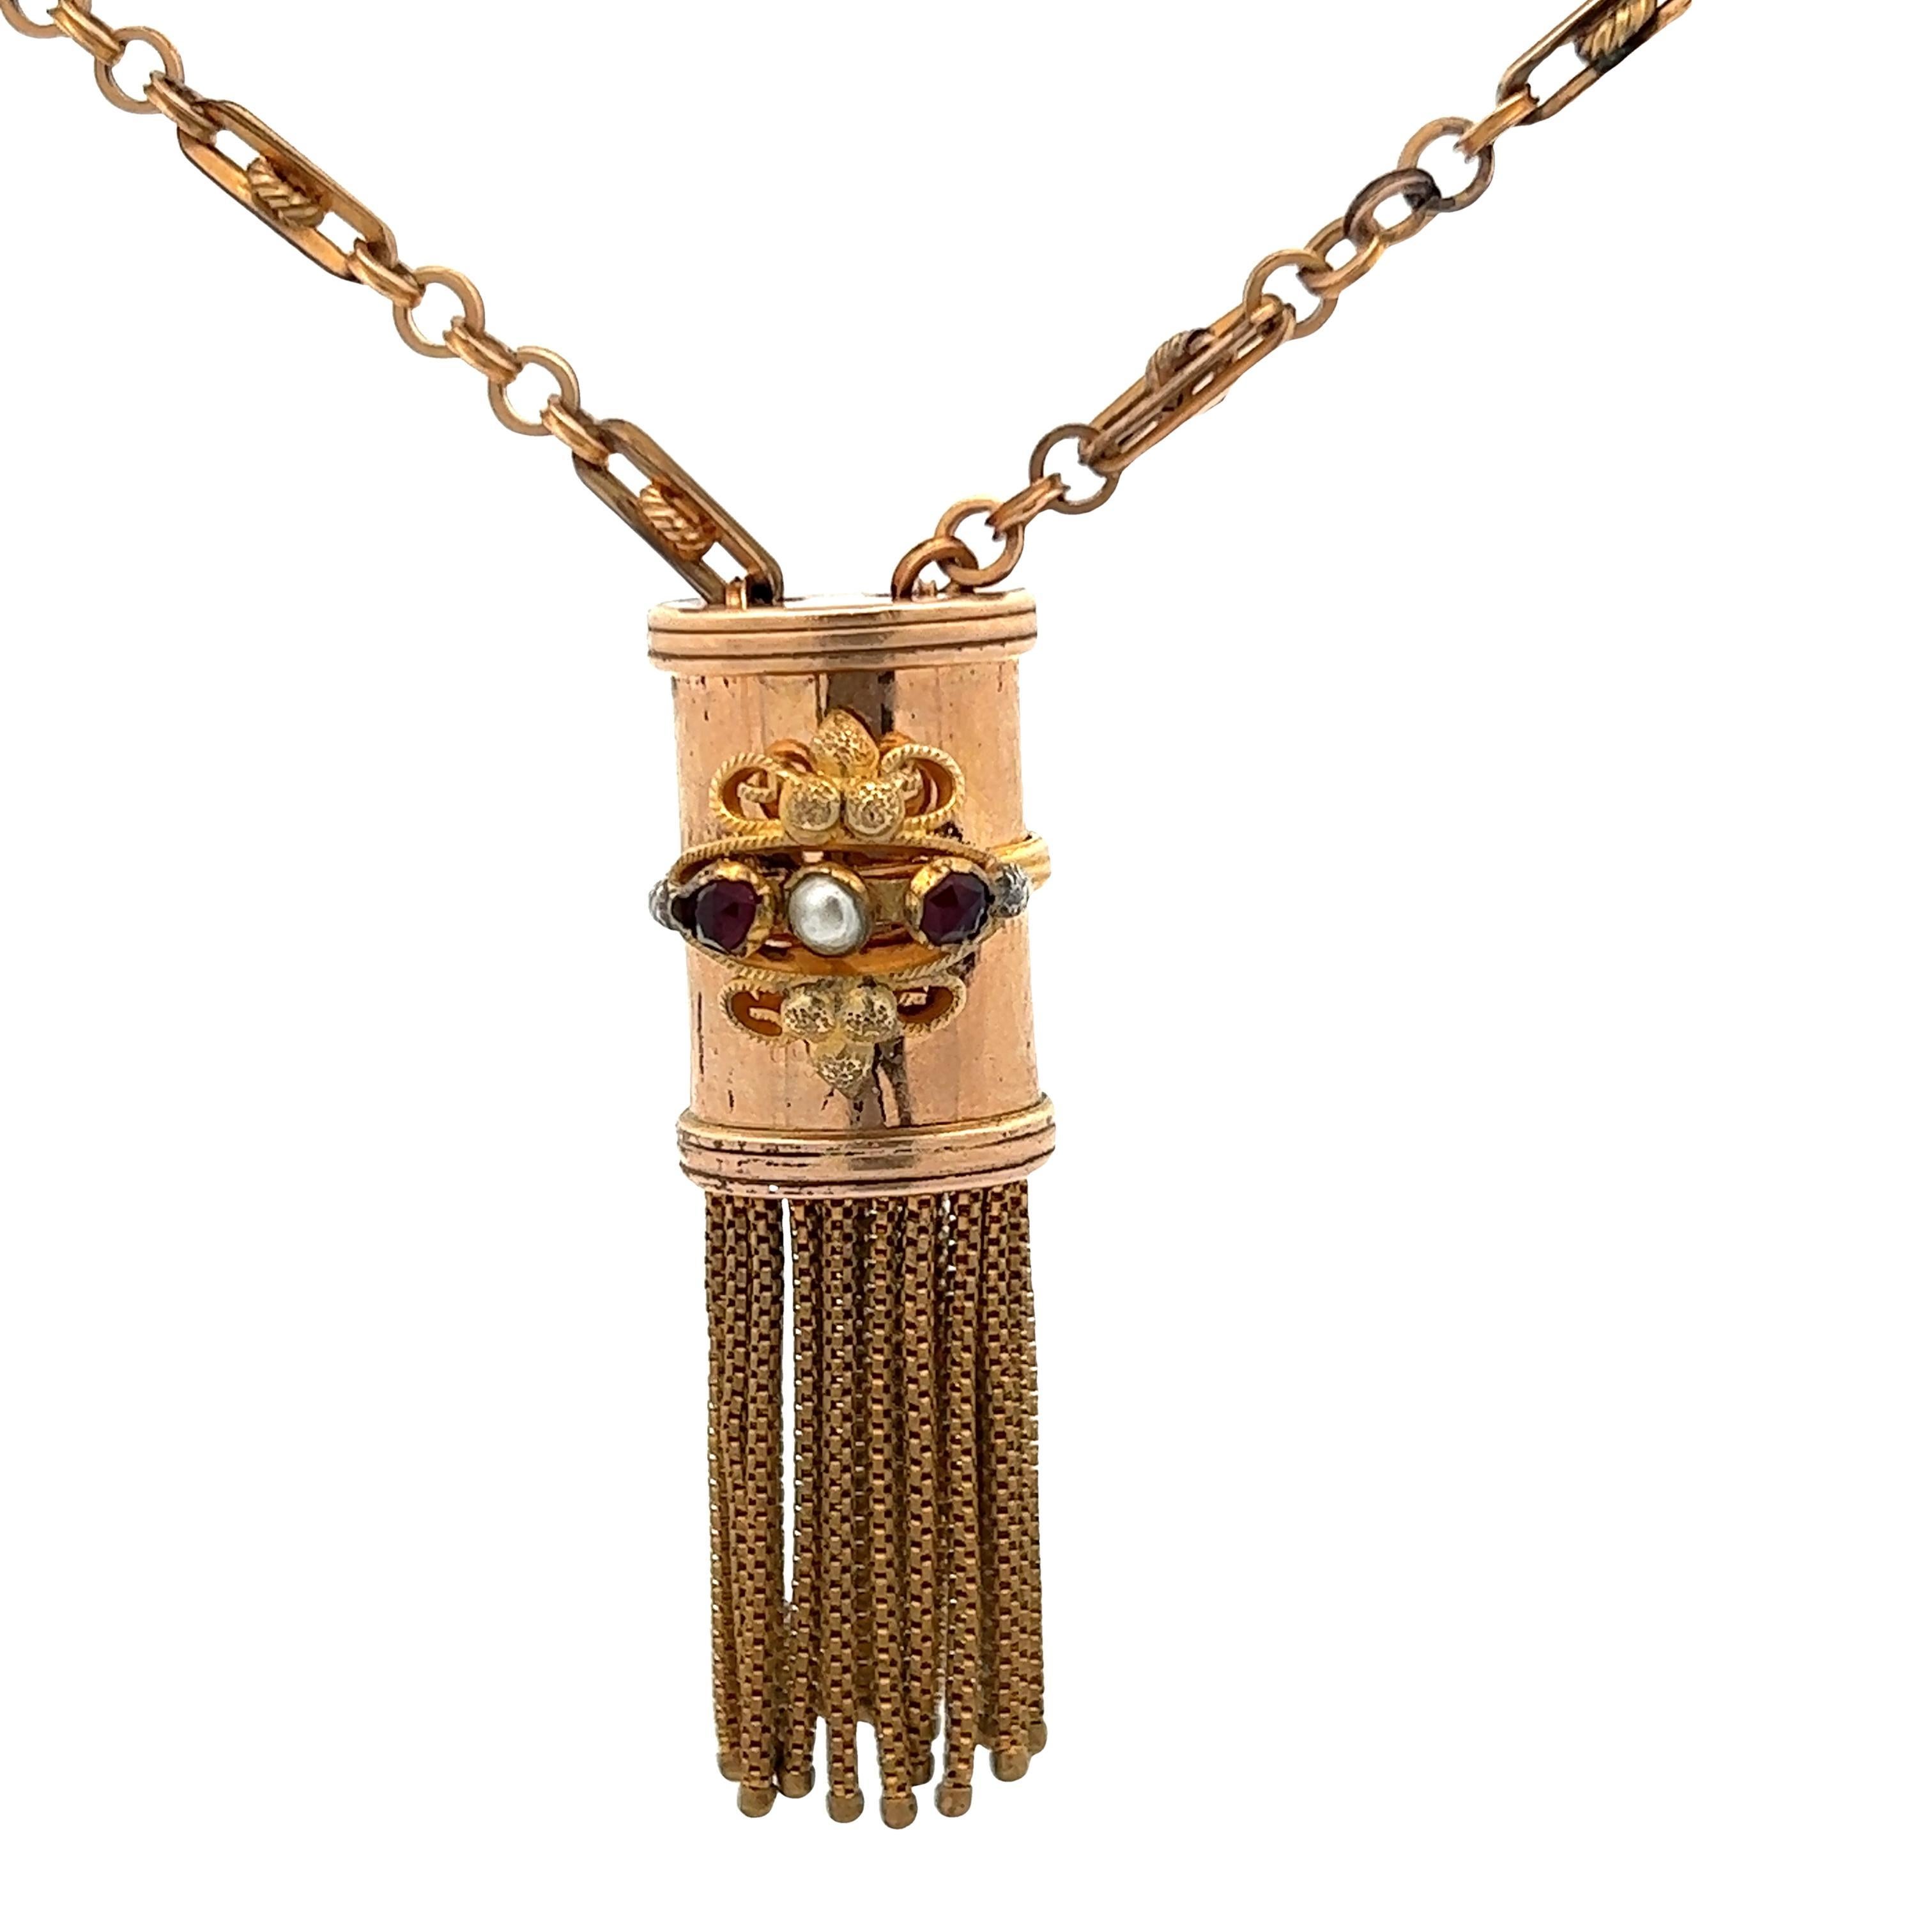 Ce magnifique collier à glands en or, datant de l'époque victorienne des années 1890, est très spécial. La chaîne à anneaux et à barrettes est tout à fait unique dans le monde d'aujourd'hui, car elle est moins courante pour l'époque actuelle,